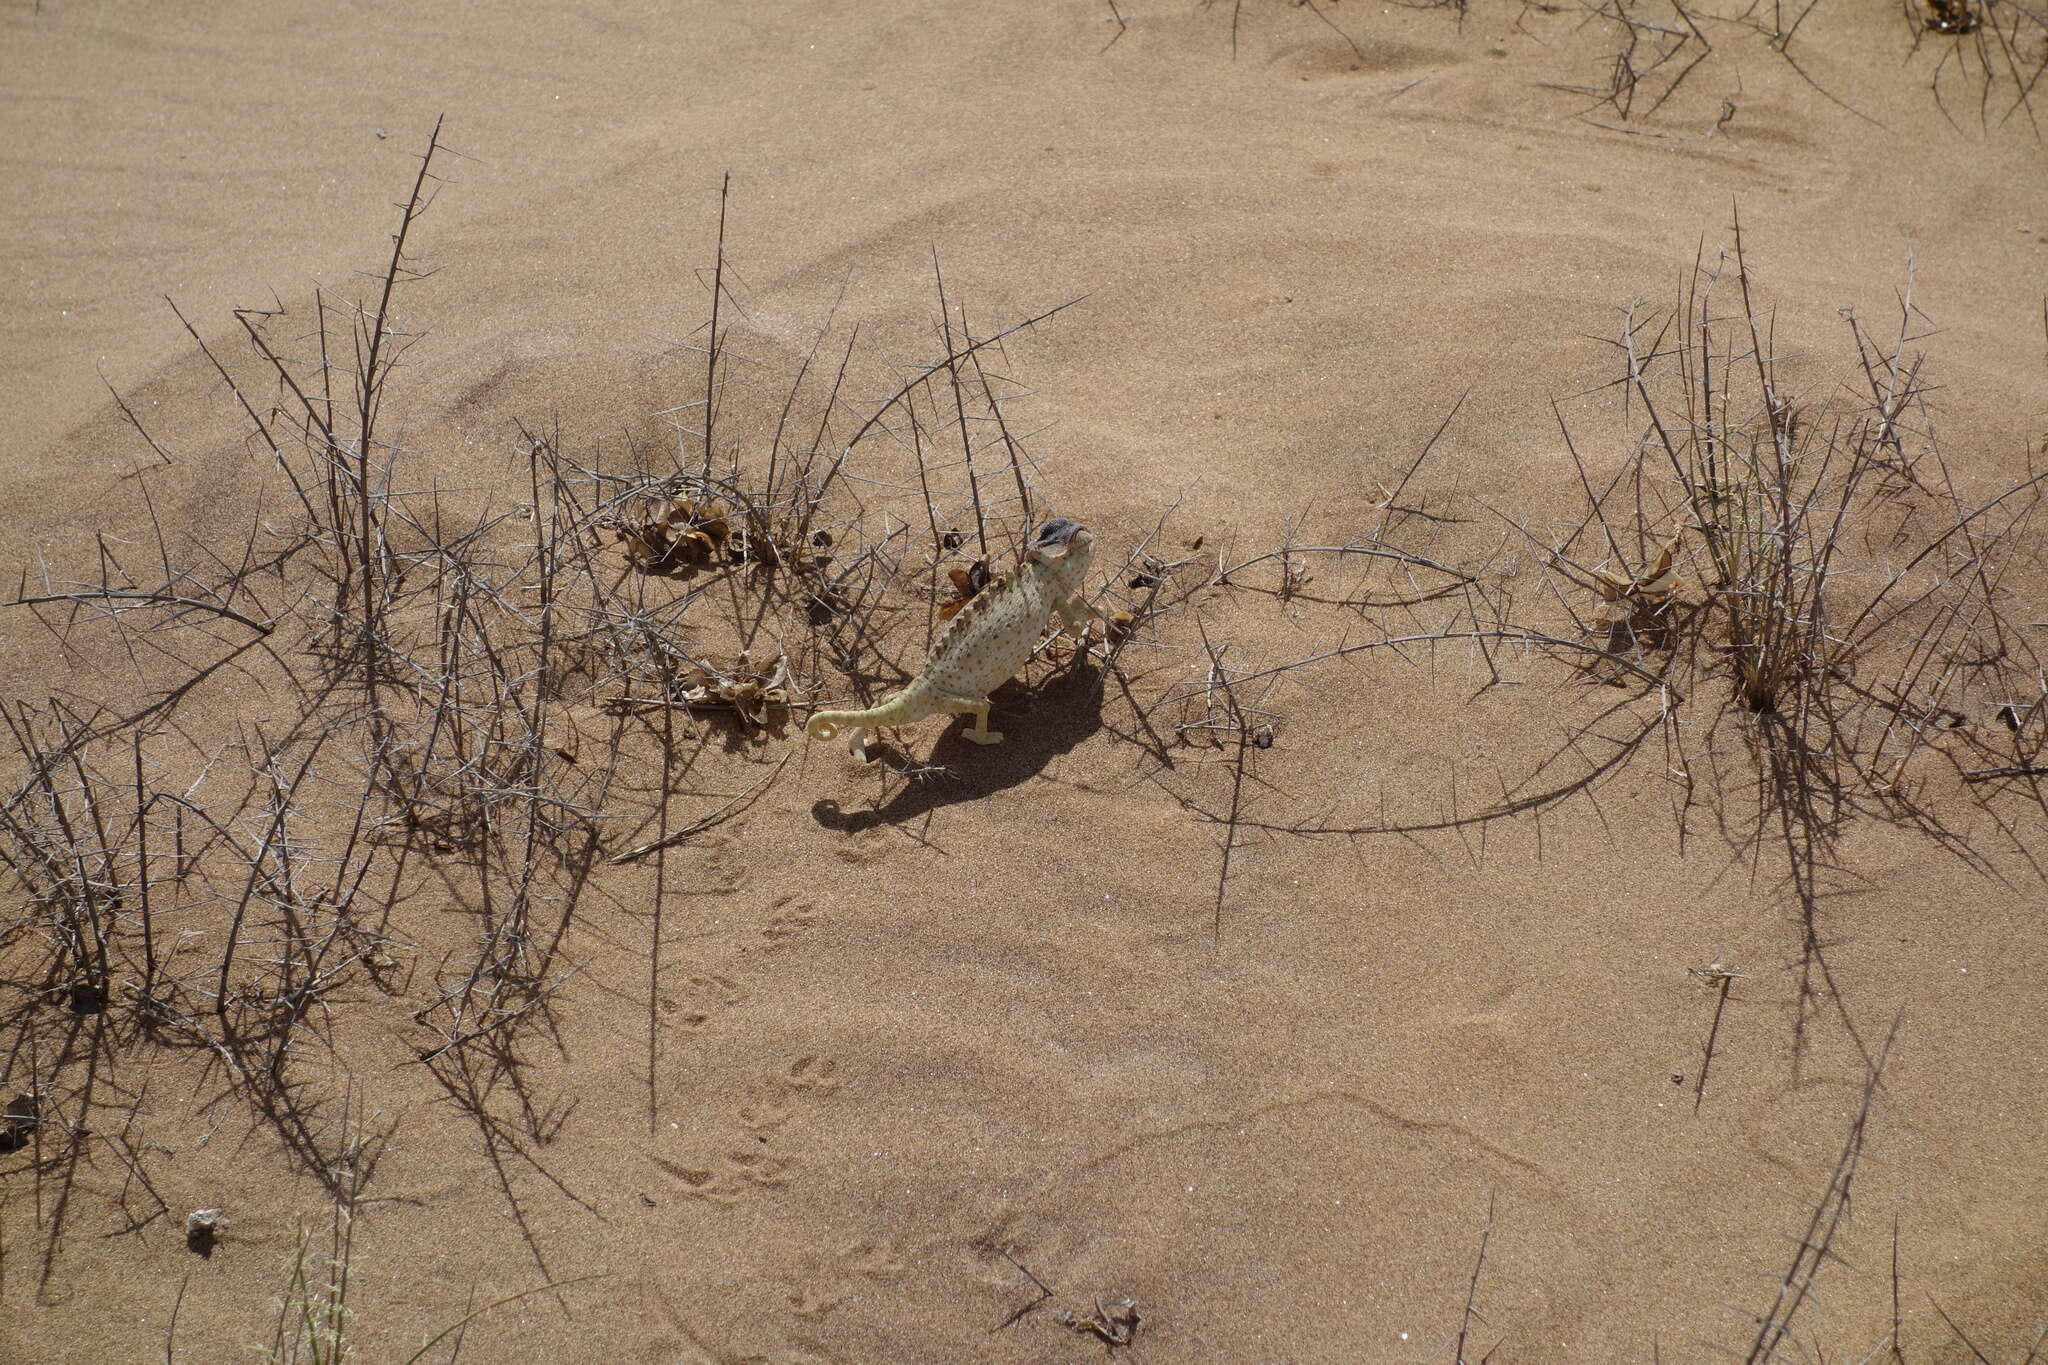 Image of Desert Chameleon